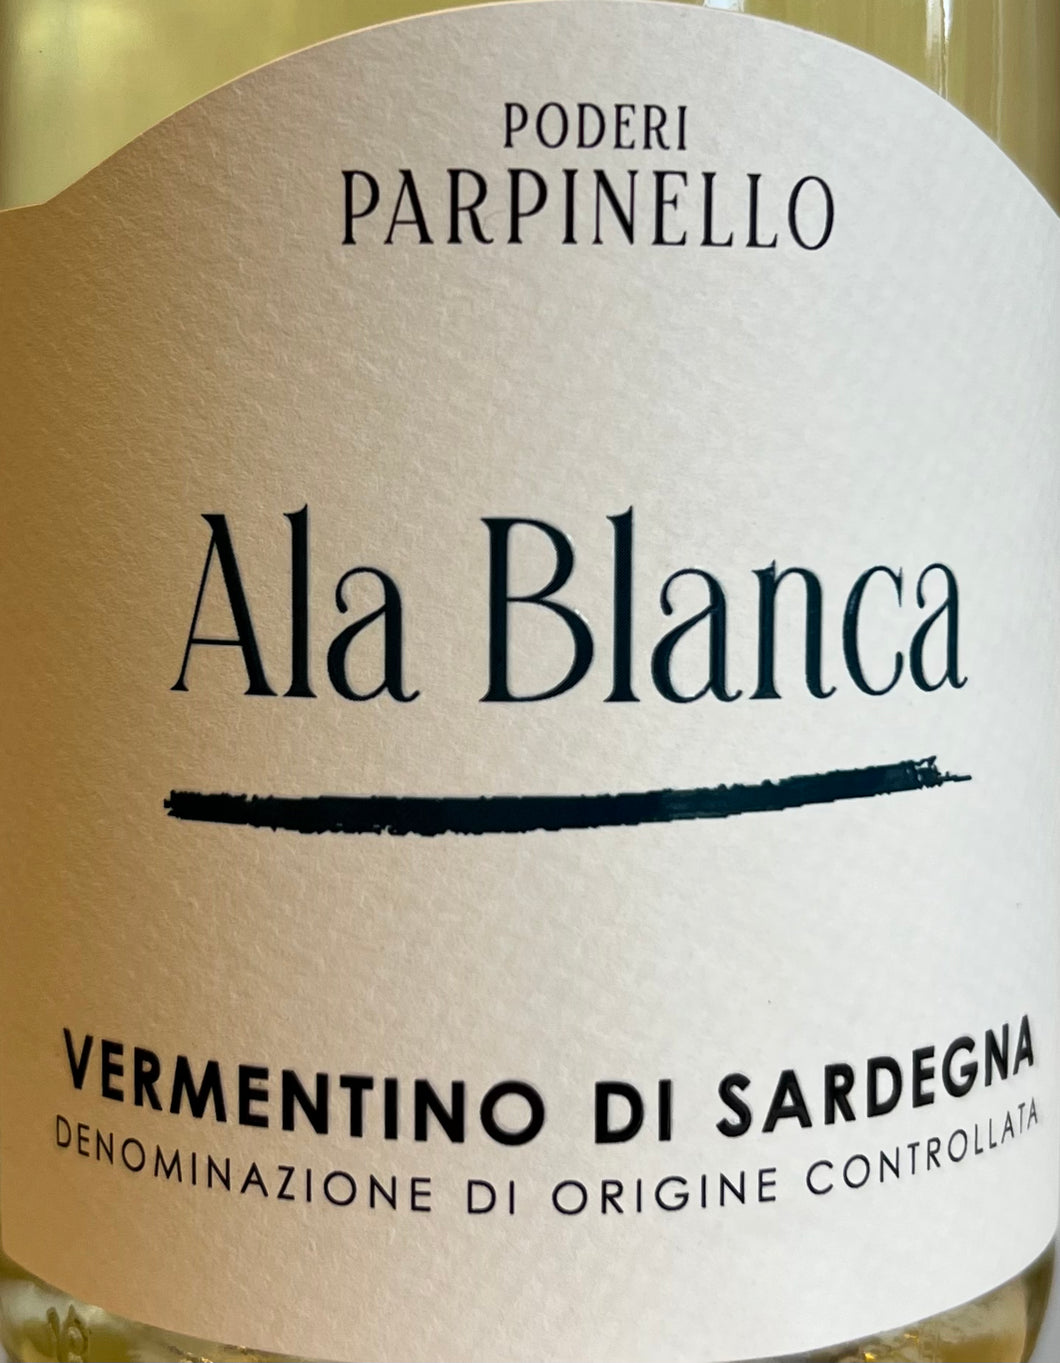 Poedere Parpinello 'Ala Blanca' - Vermentino di Sardegna